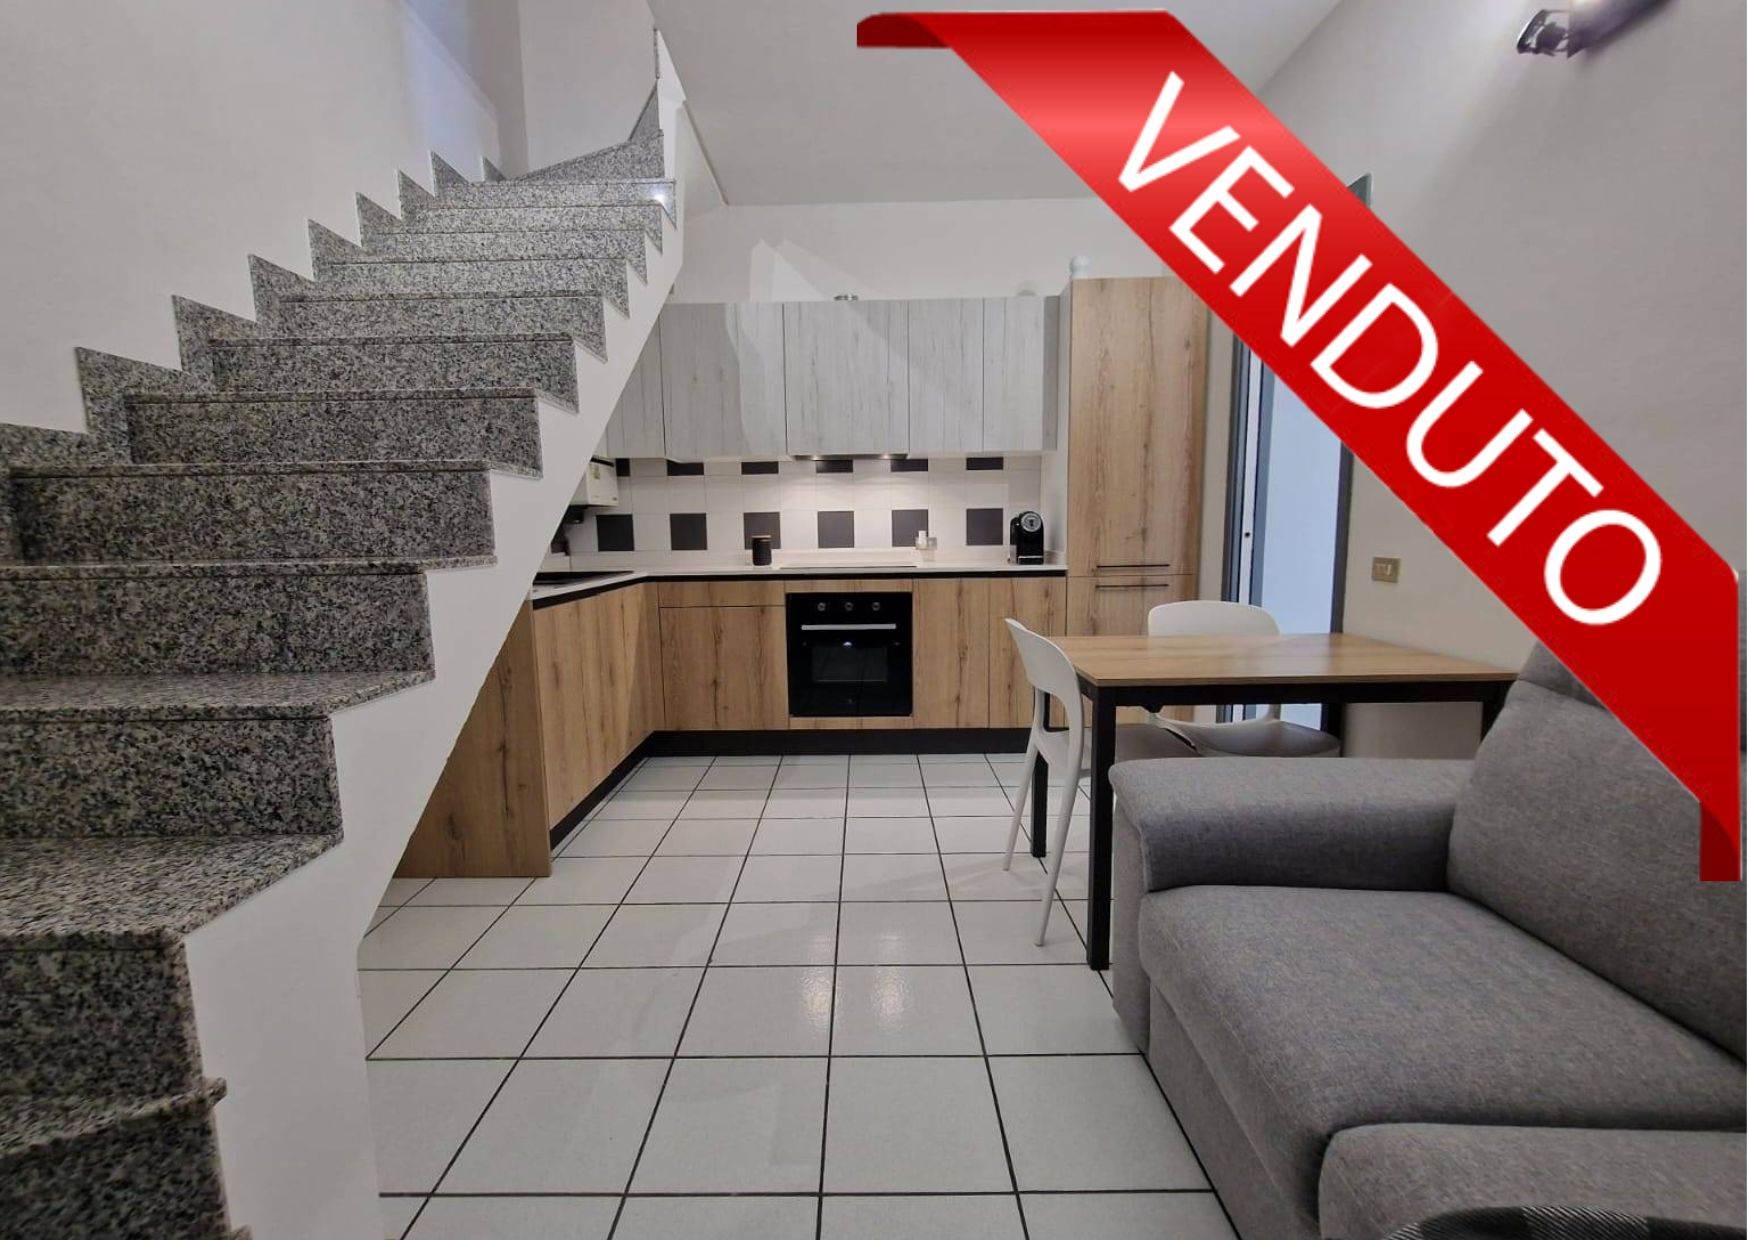 Appartamento in vendita a Zanica, 2 locali, prezzo € 83.000 | PortaleAgenzieImmobiliari.it